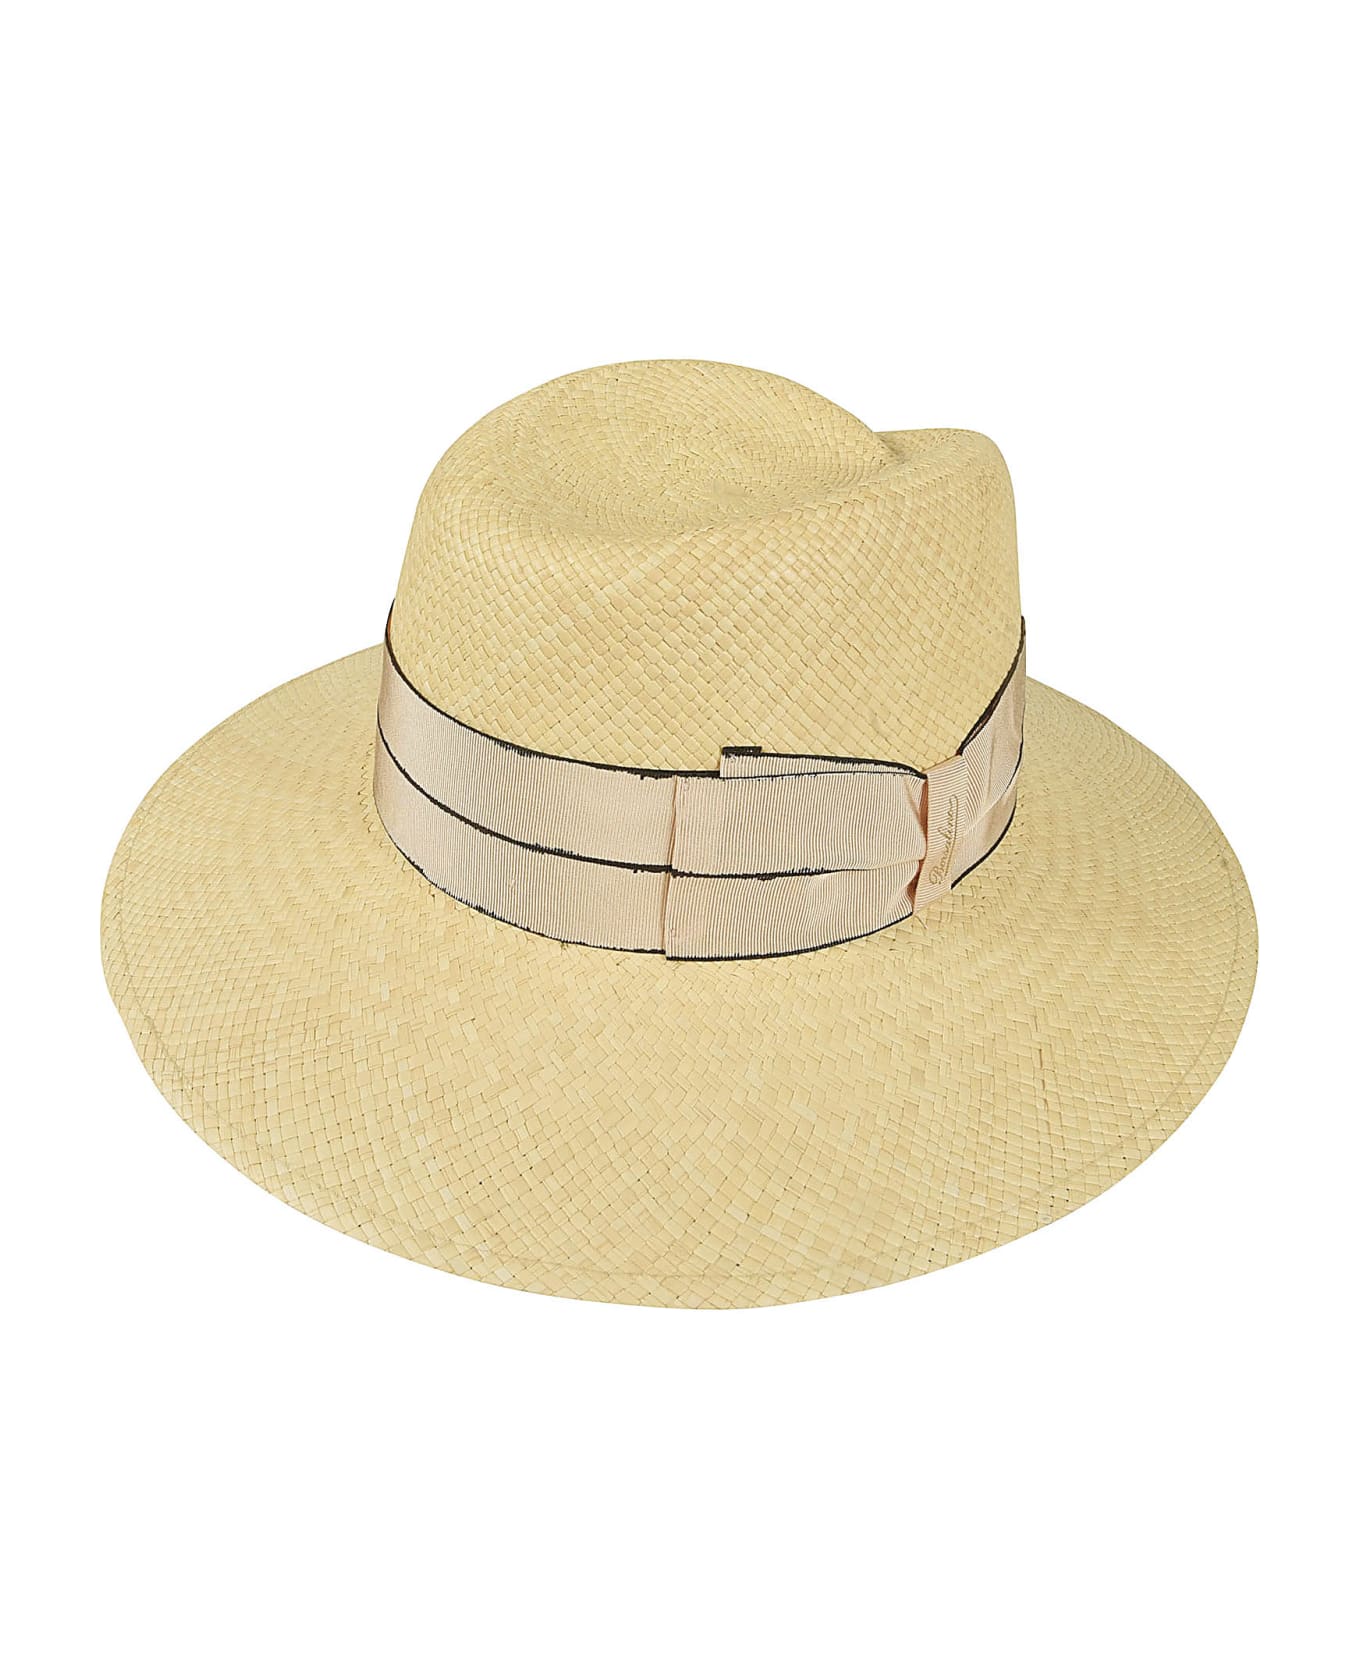 Borsalino Bow Logo Woven Hat - 7142 帽子